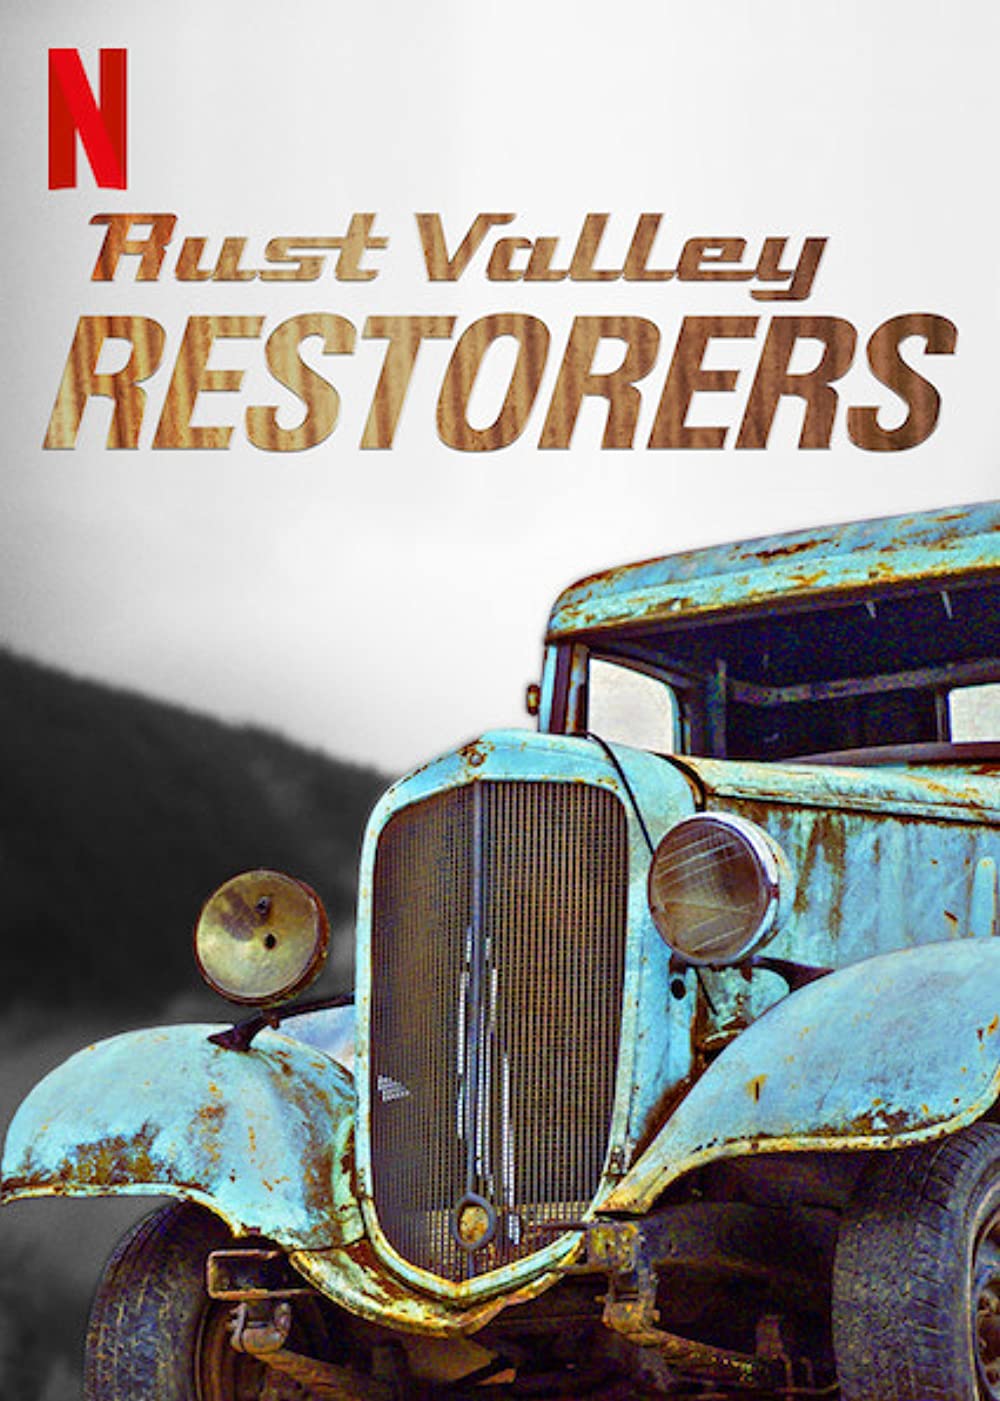 Caratula de Rust Valley Restorers (Rust Valley Restorers) 